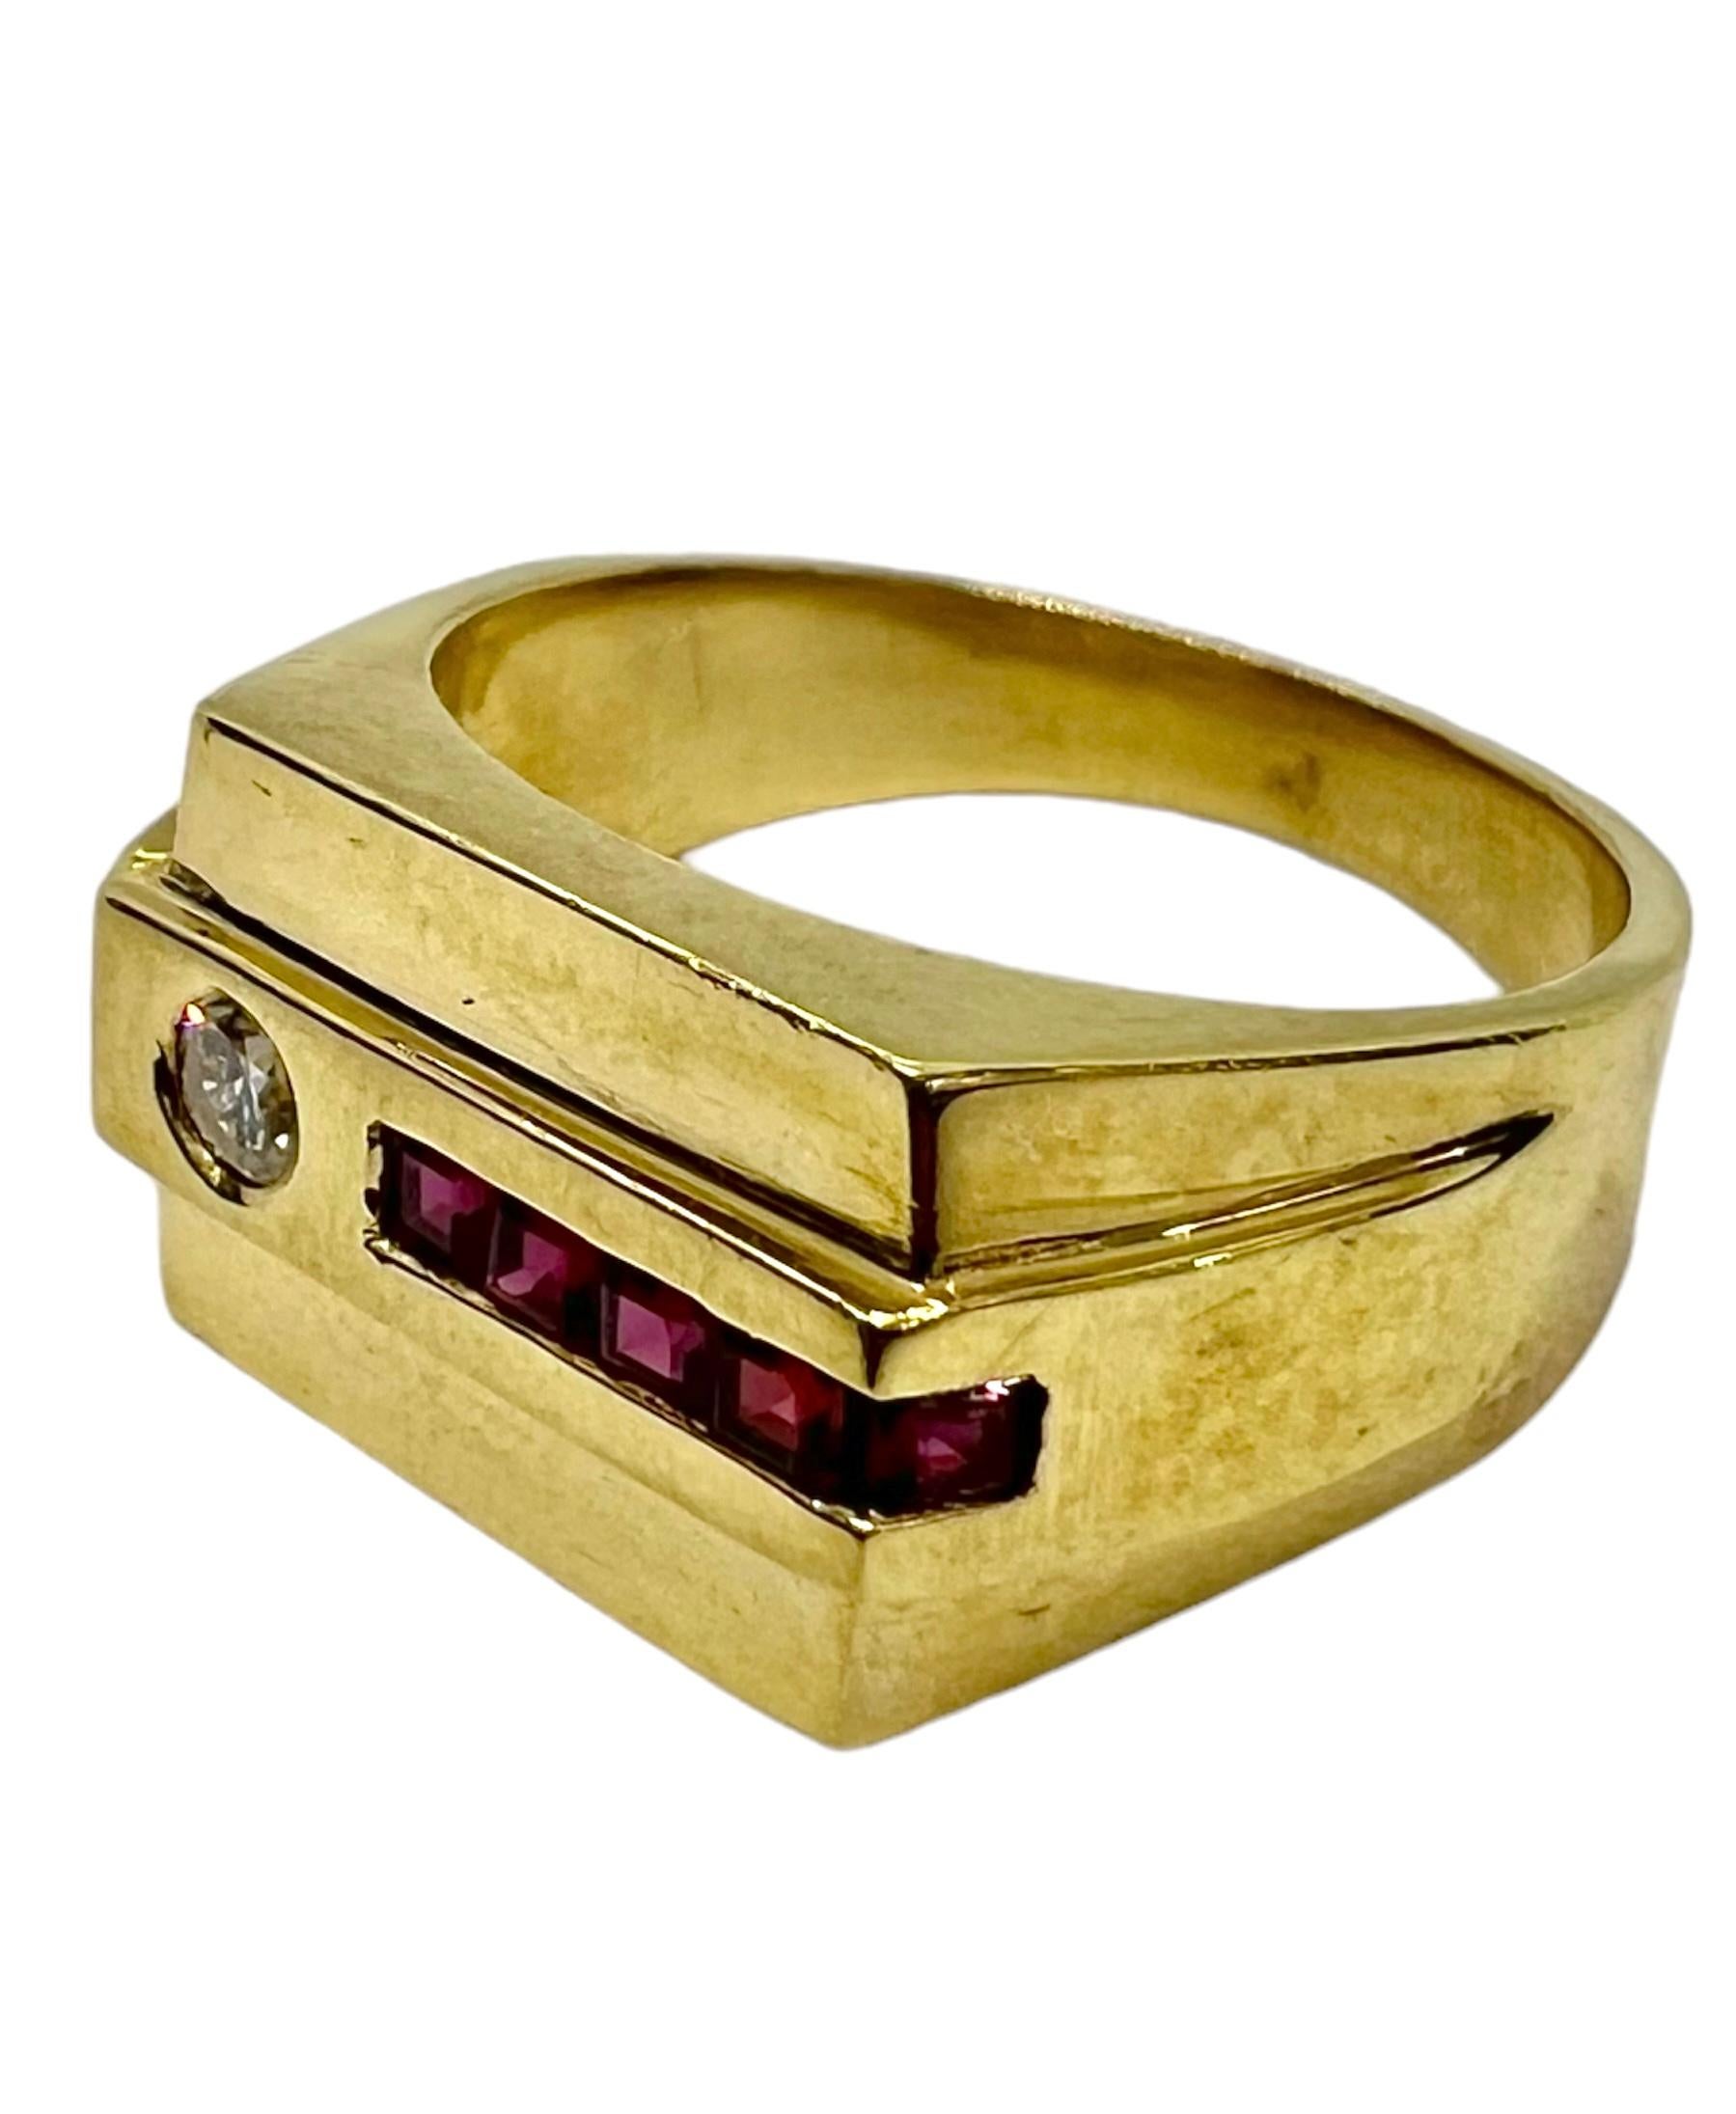 Bague en or jaune avec rubis de taille carrée et diamants ronds.

Sophia D by Joseph Dardashti Ltd est connue dans le monde entier depuis 35 ans et s'inspire du design classique de l'Art déco qui fusionne avec les techniques de fabrication modernes. 